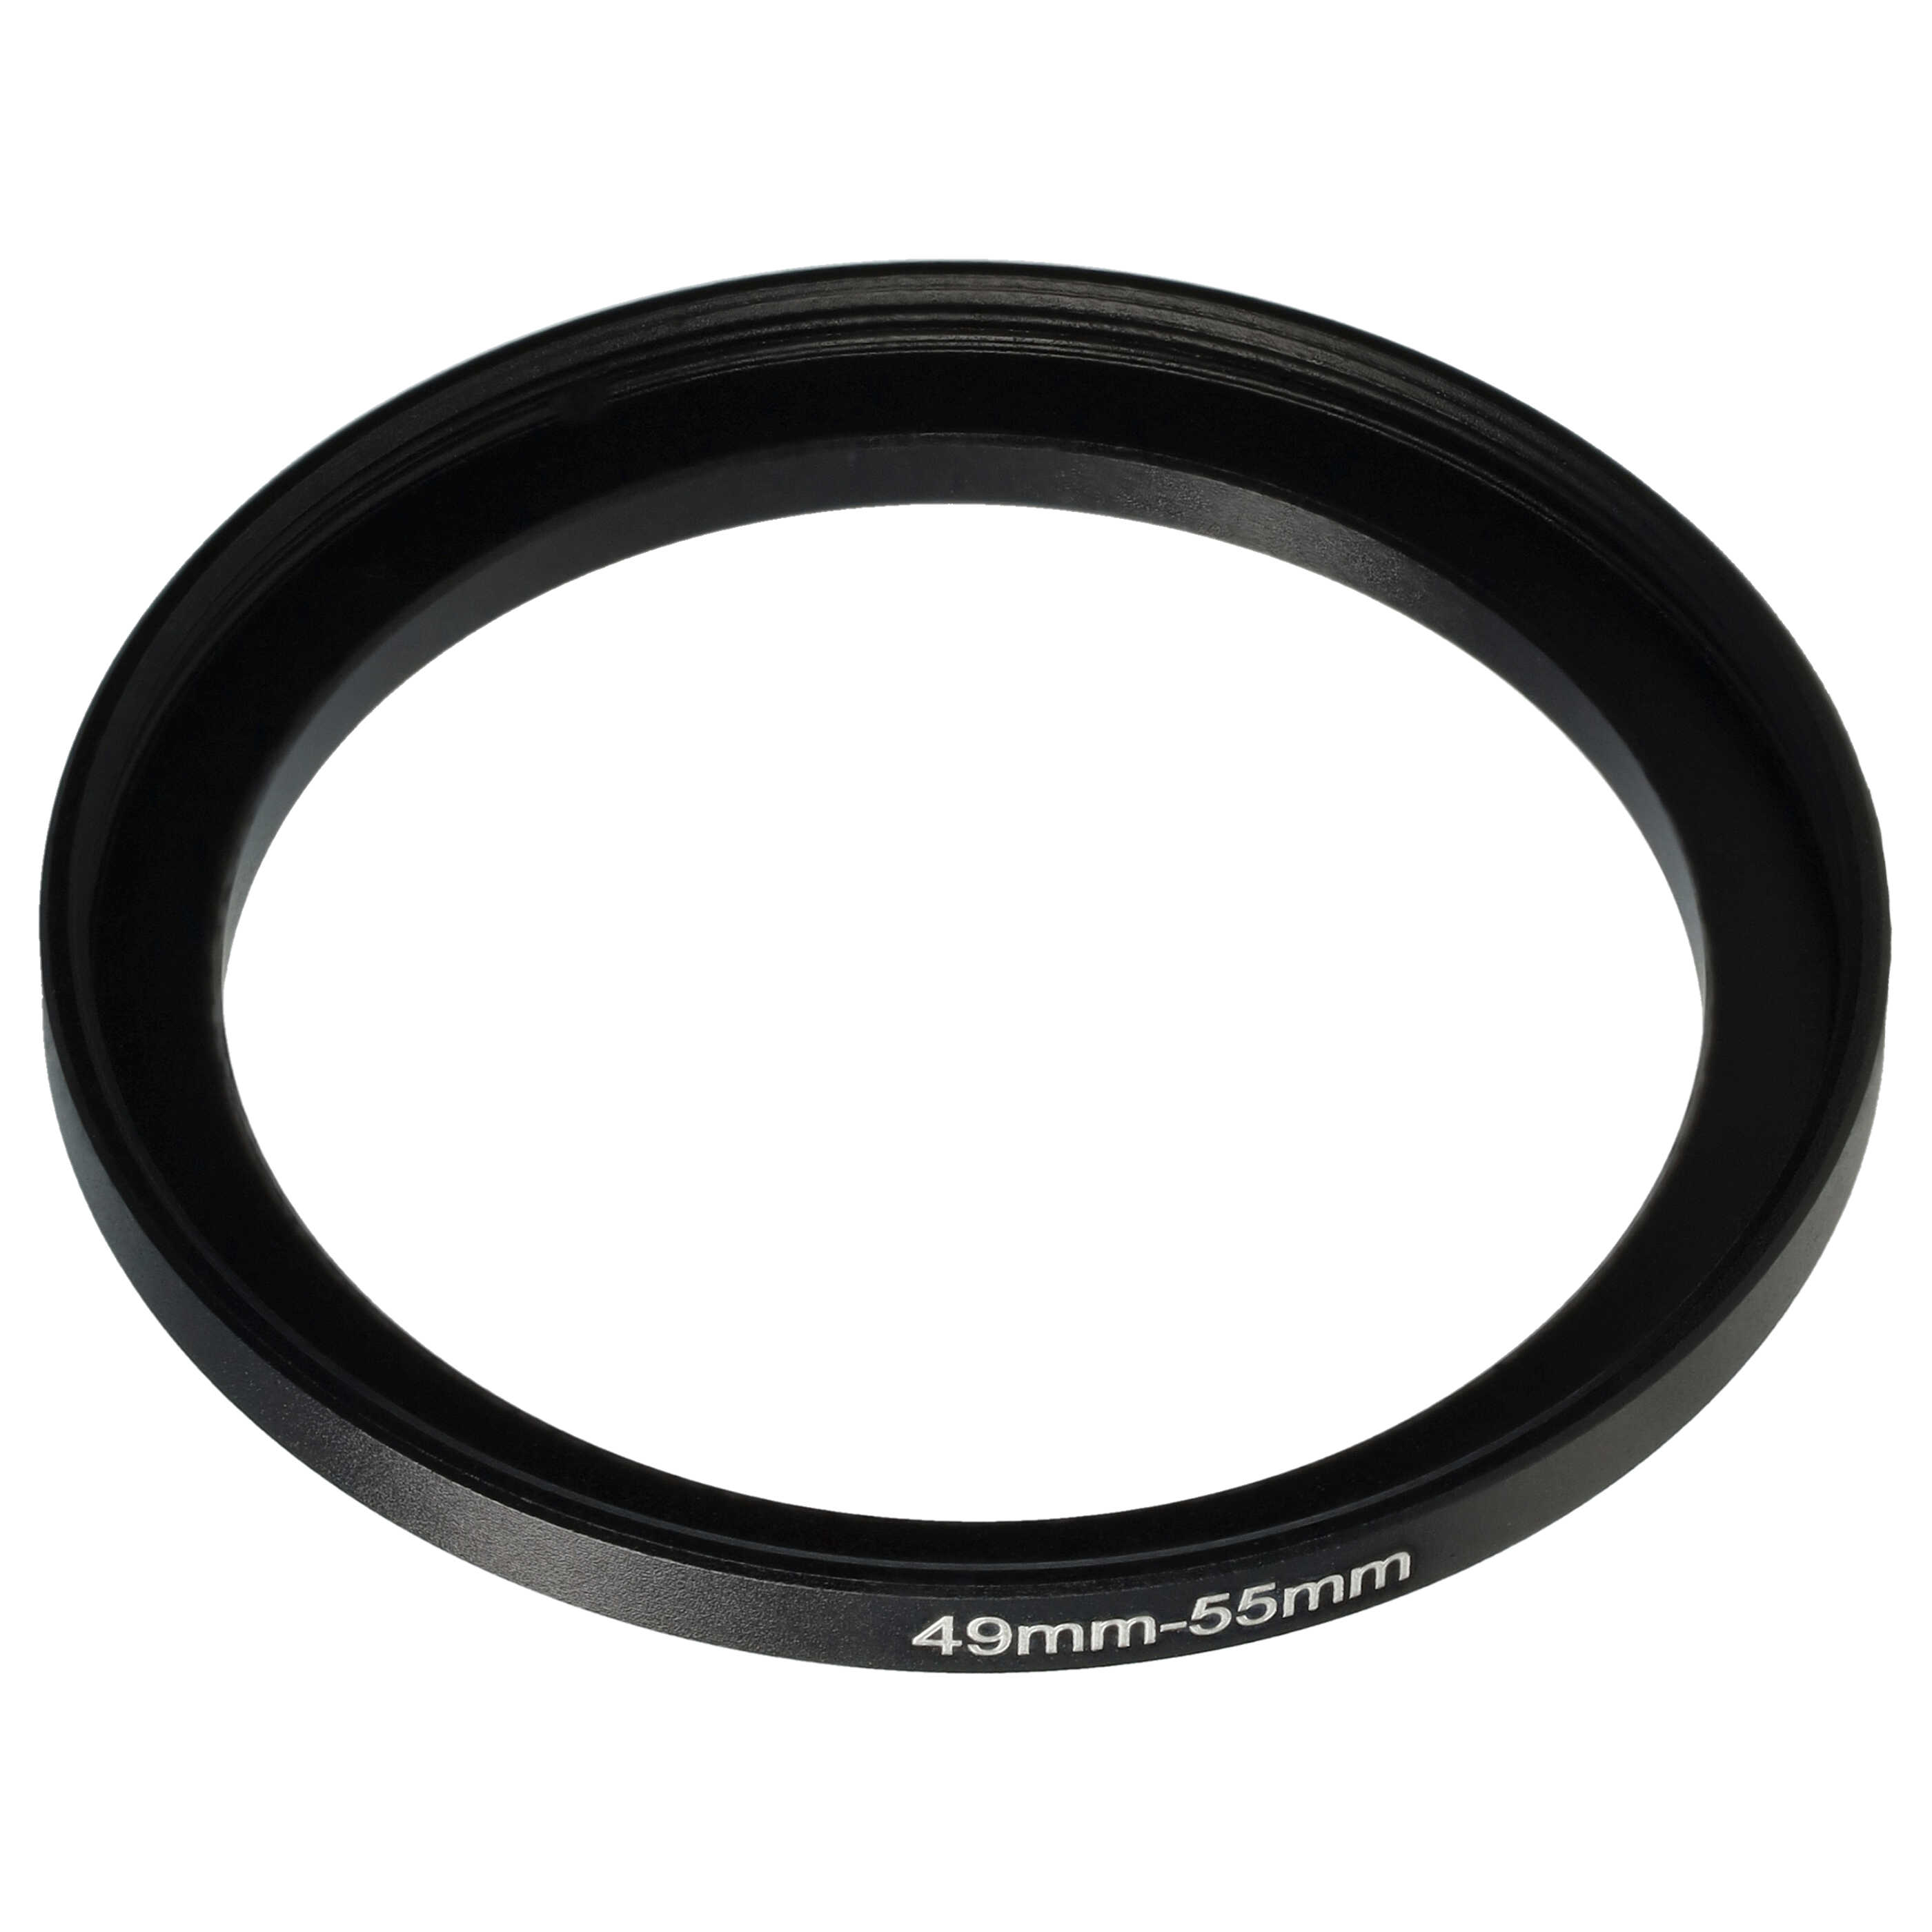 Step-Up-Ring Adapter 49 mm auf 55 mm passend für diverse Kamera-Objektive - Filteradapter